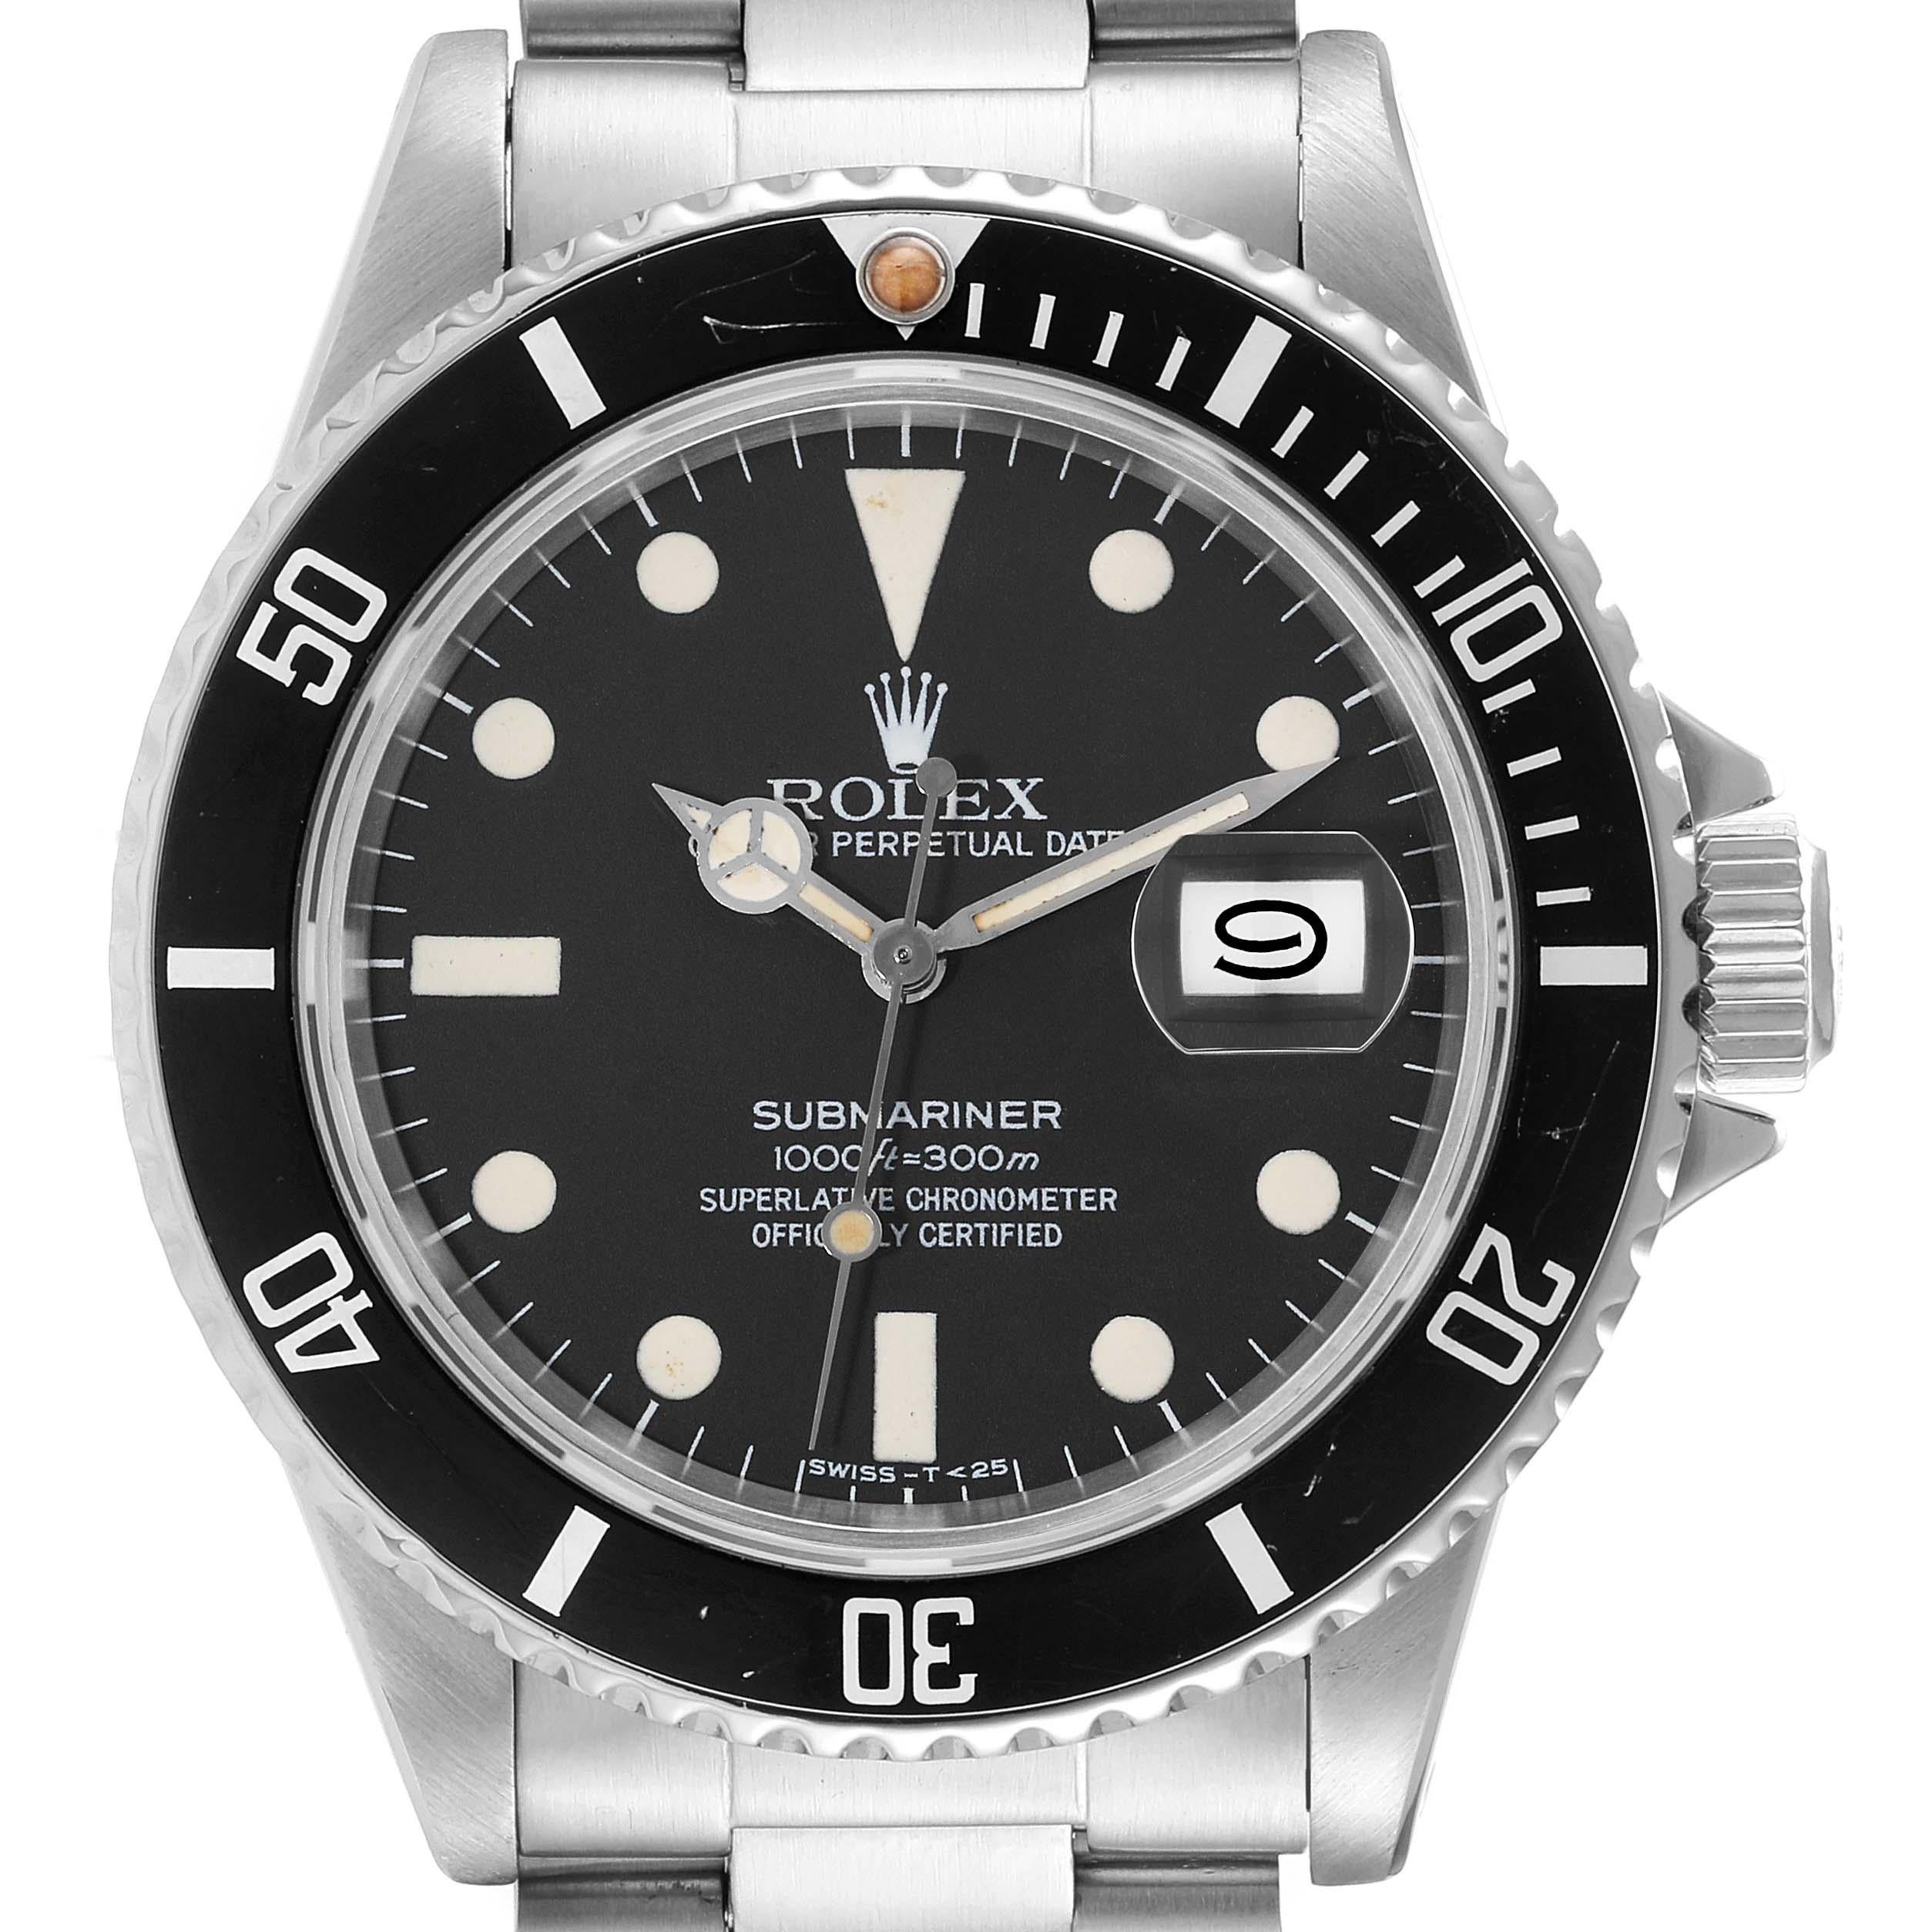 Rolex Submariner Date Steel Vintage Mens Watch 16800 Box Papers. Mouvement automatique à remontage automatique, officiellement certifié chronomètre. Boîtier en acier inoxydable de 40 mm de diamètre. Lunette tournante unidirectionnelle en acier